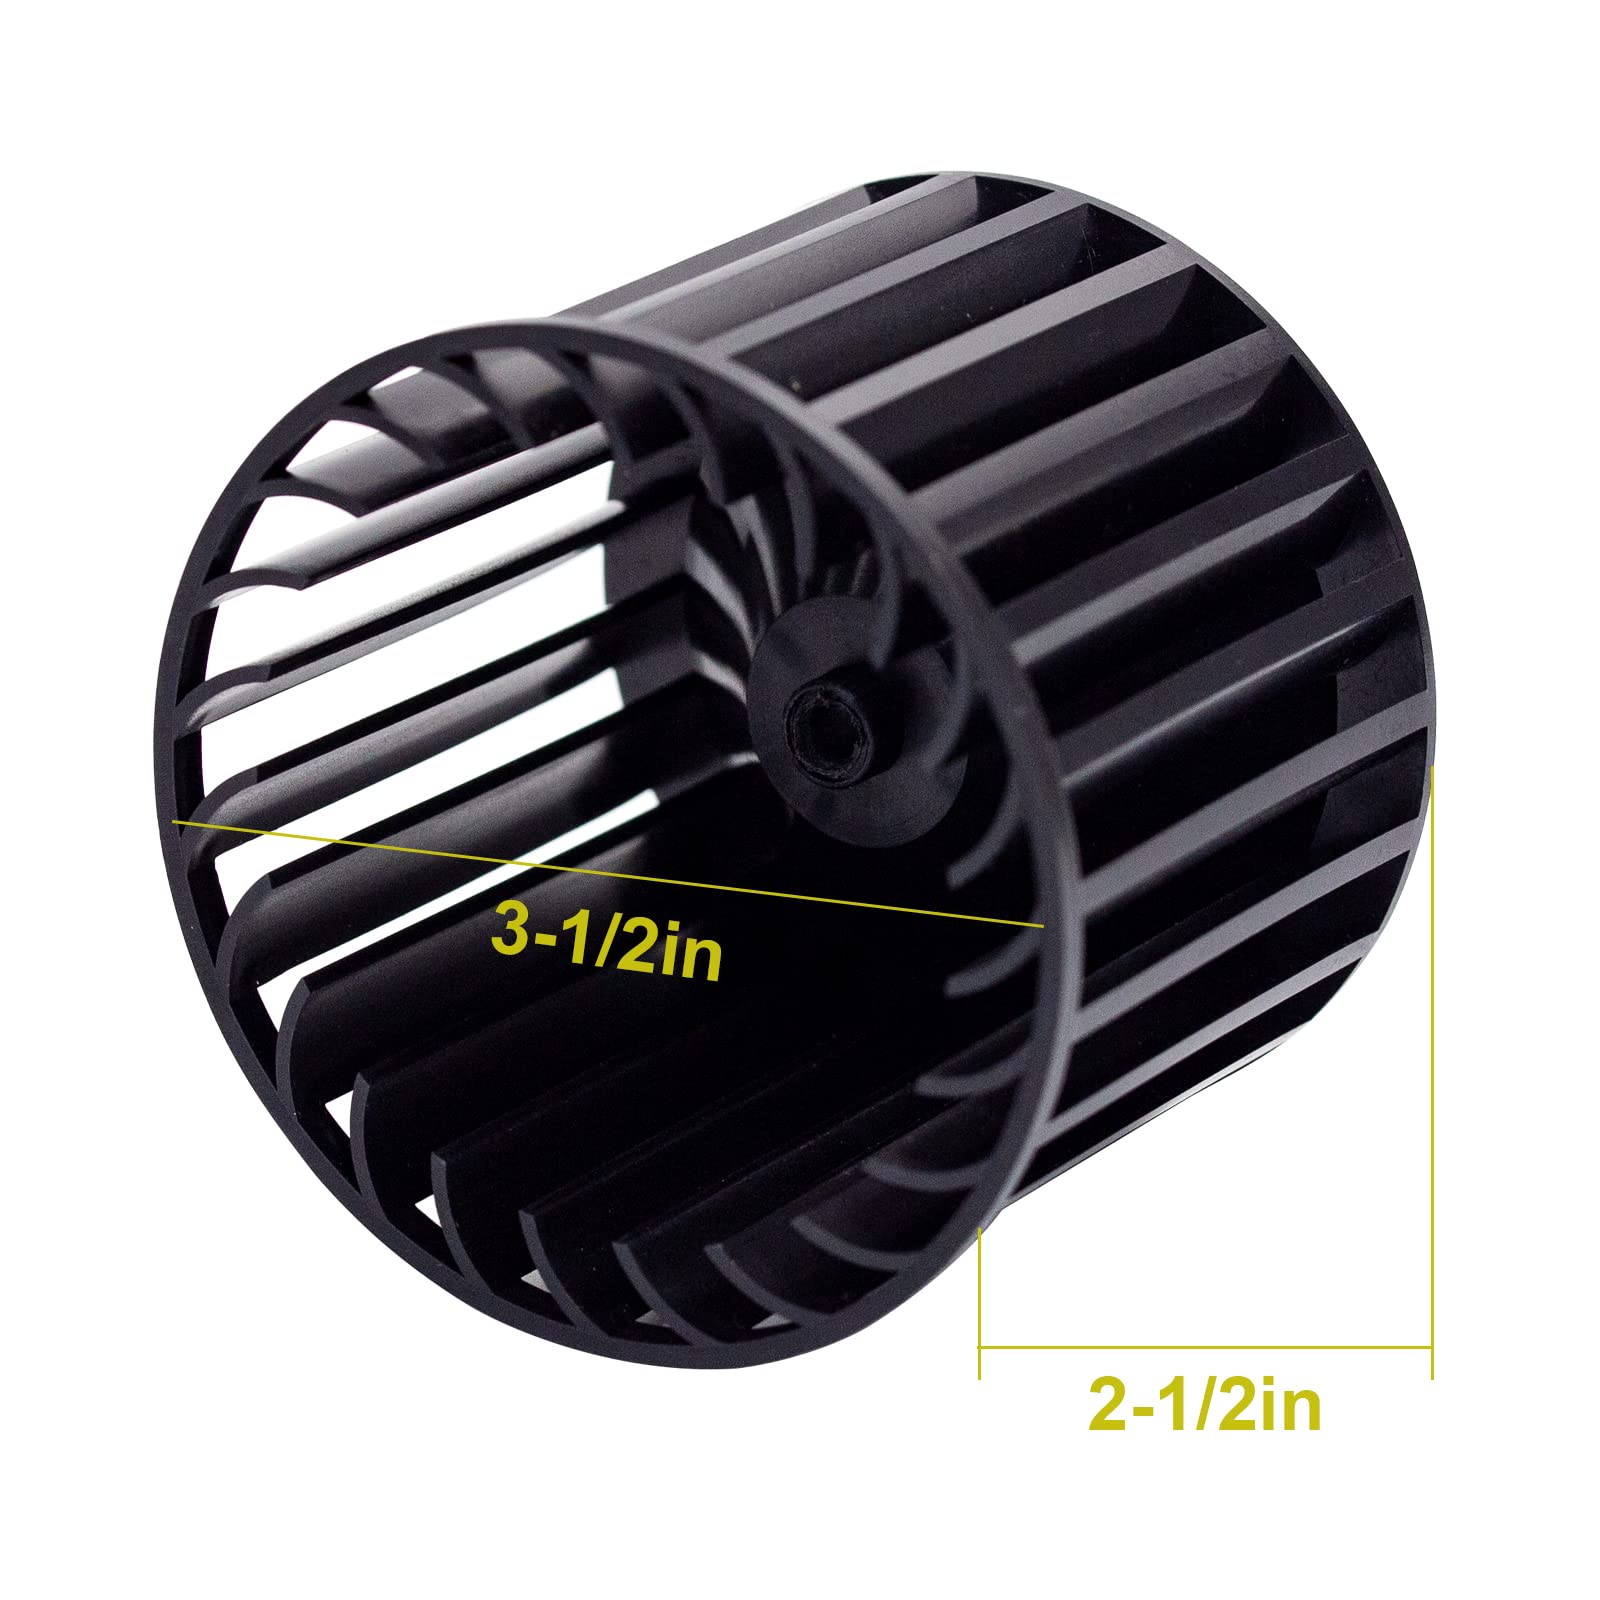 S97009796 Bathroom Fan Motor Blower Assembly for Nutone Broan Bulb Ceiling Heater Water Heater, Bath Fan, Unit Heater 162-E、G、J、K、L、M and 164-E、G、J、K、L、M 70CFM 120V AP5608550